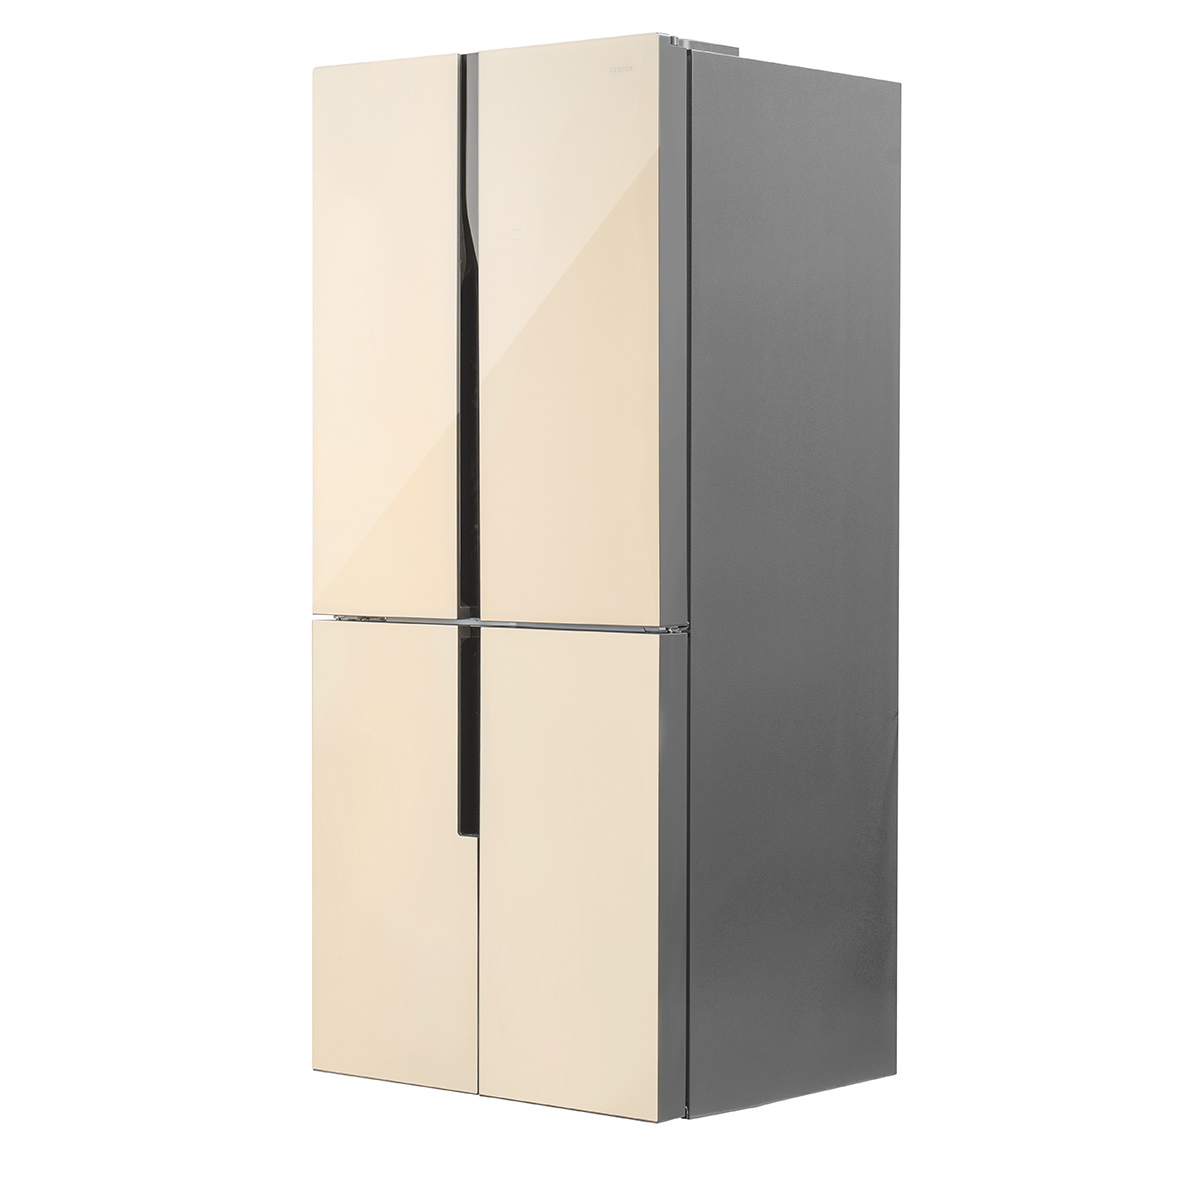 Холодильник hyundai cs6073fv. Холодильник Hyundai cs5073fv. Холодильник Side by Side Hyundai cs6073fv. Холодильник Hyundai cs6073fv белый. Холодильник Hyundai cs5073fv, графит.